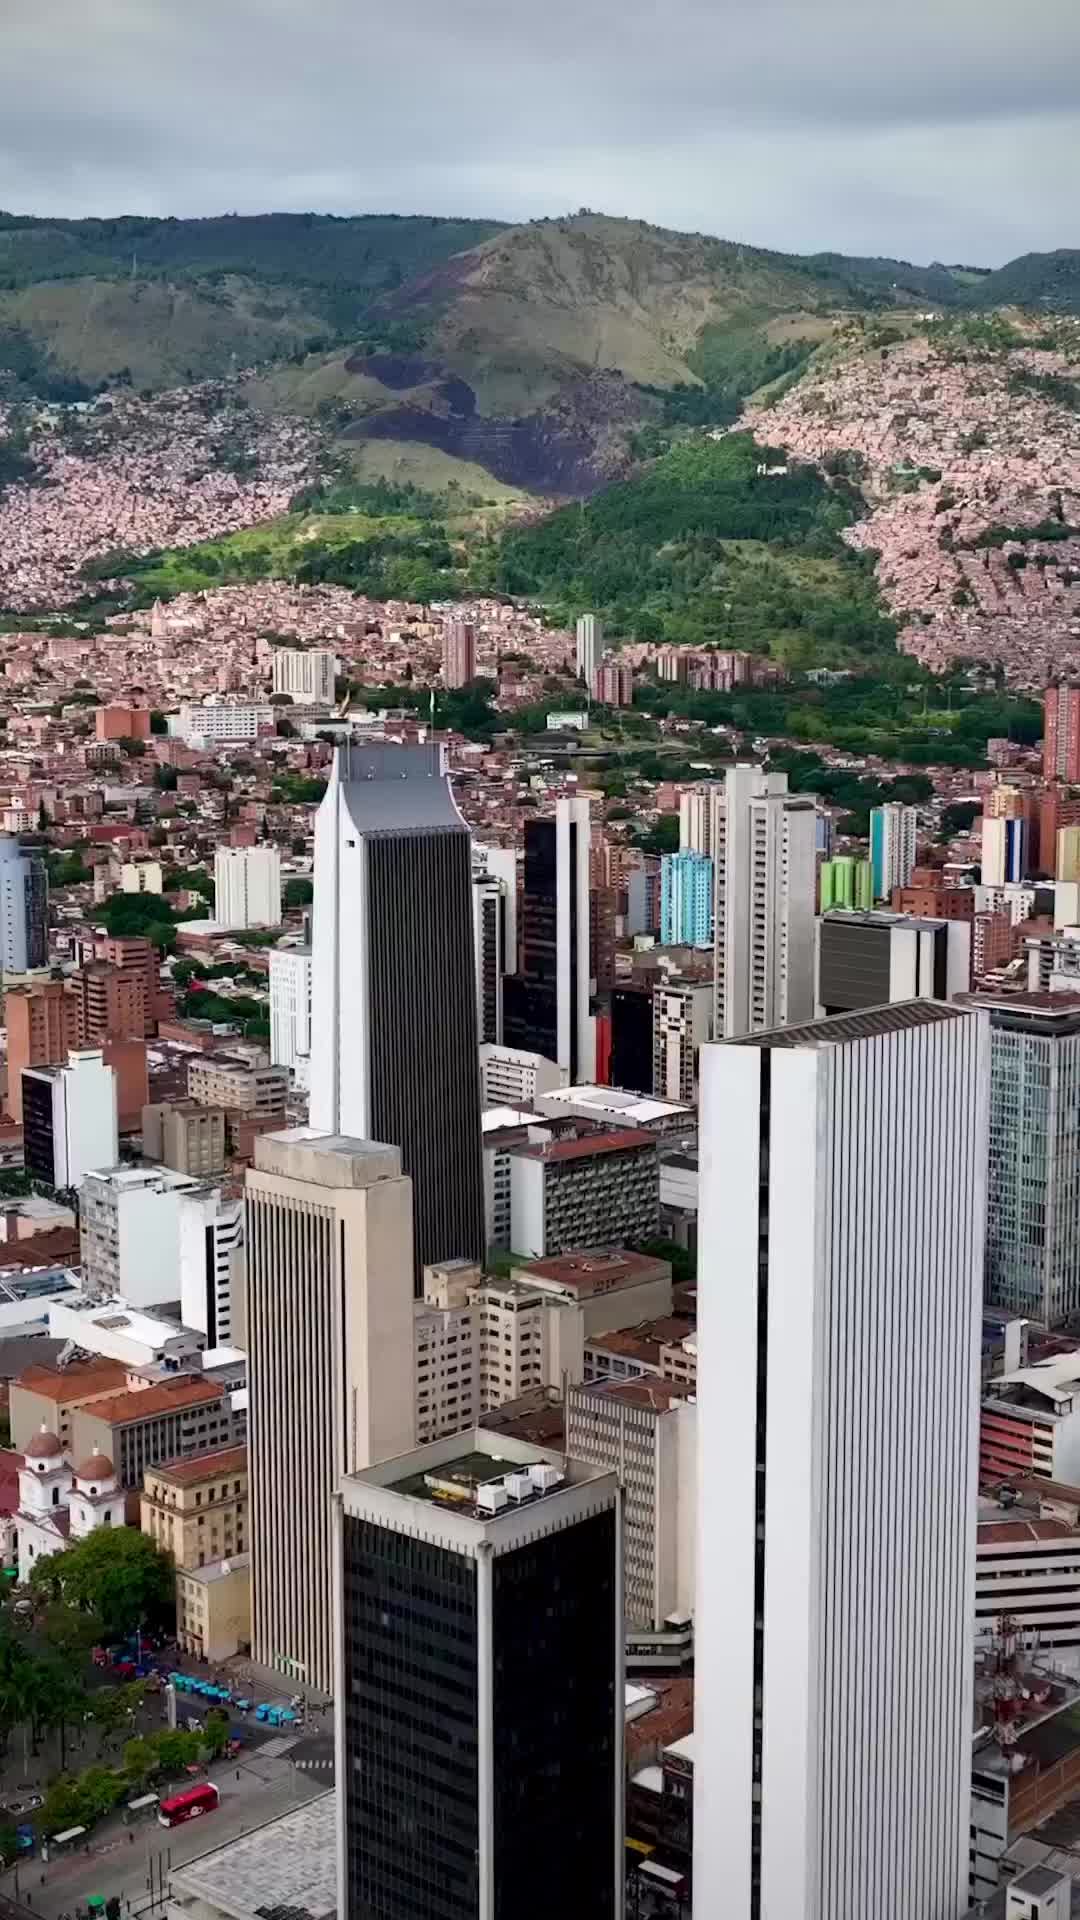 Tallest Building in Medellín: El Edificio Coltejer